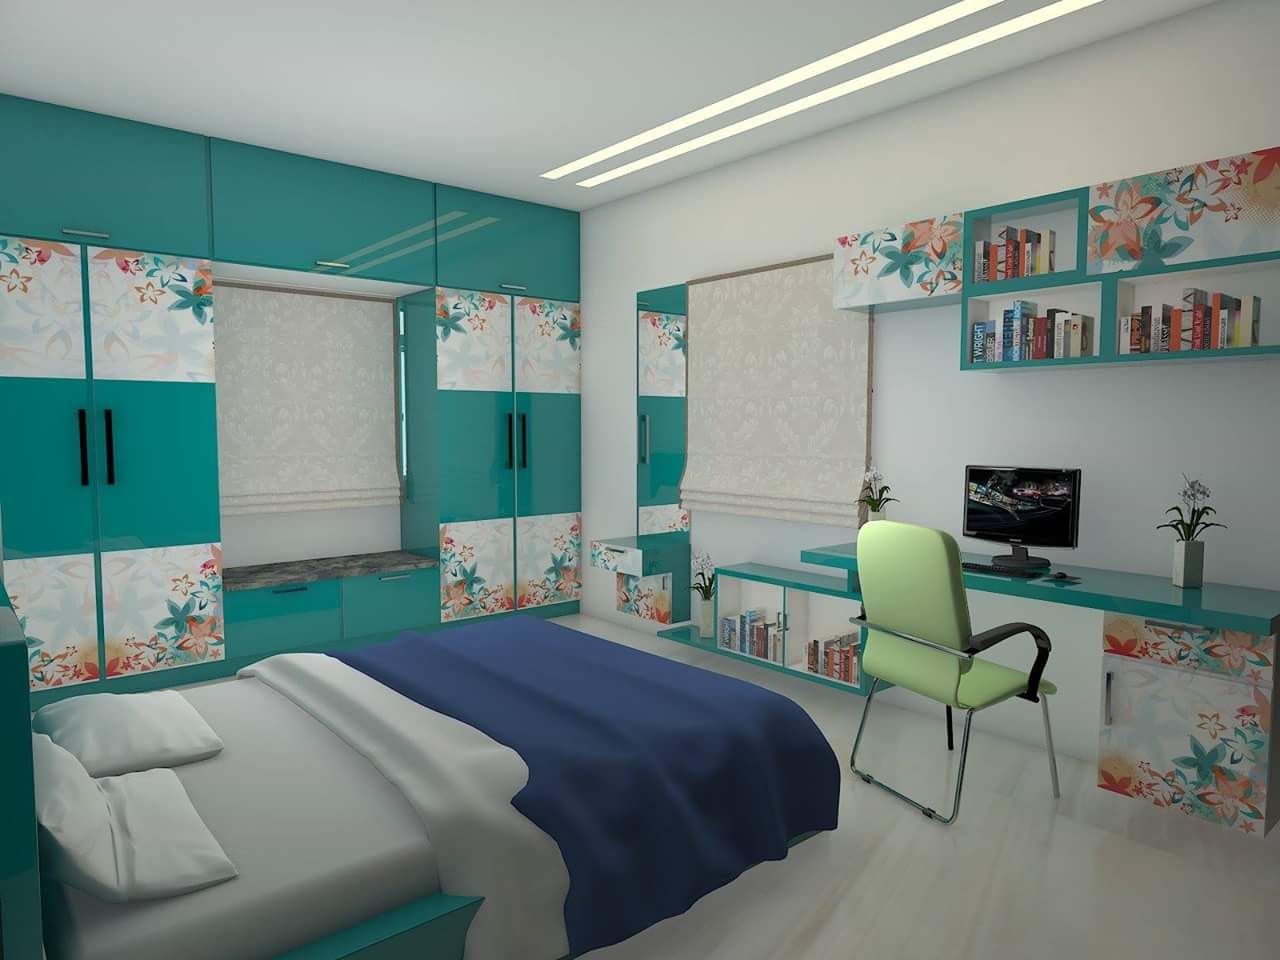 Children Bed room homify Modern style bedroom Plywood children's bedding,kidsbedroom,childrenbedroomideas